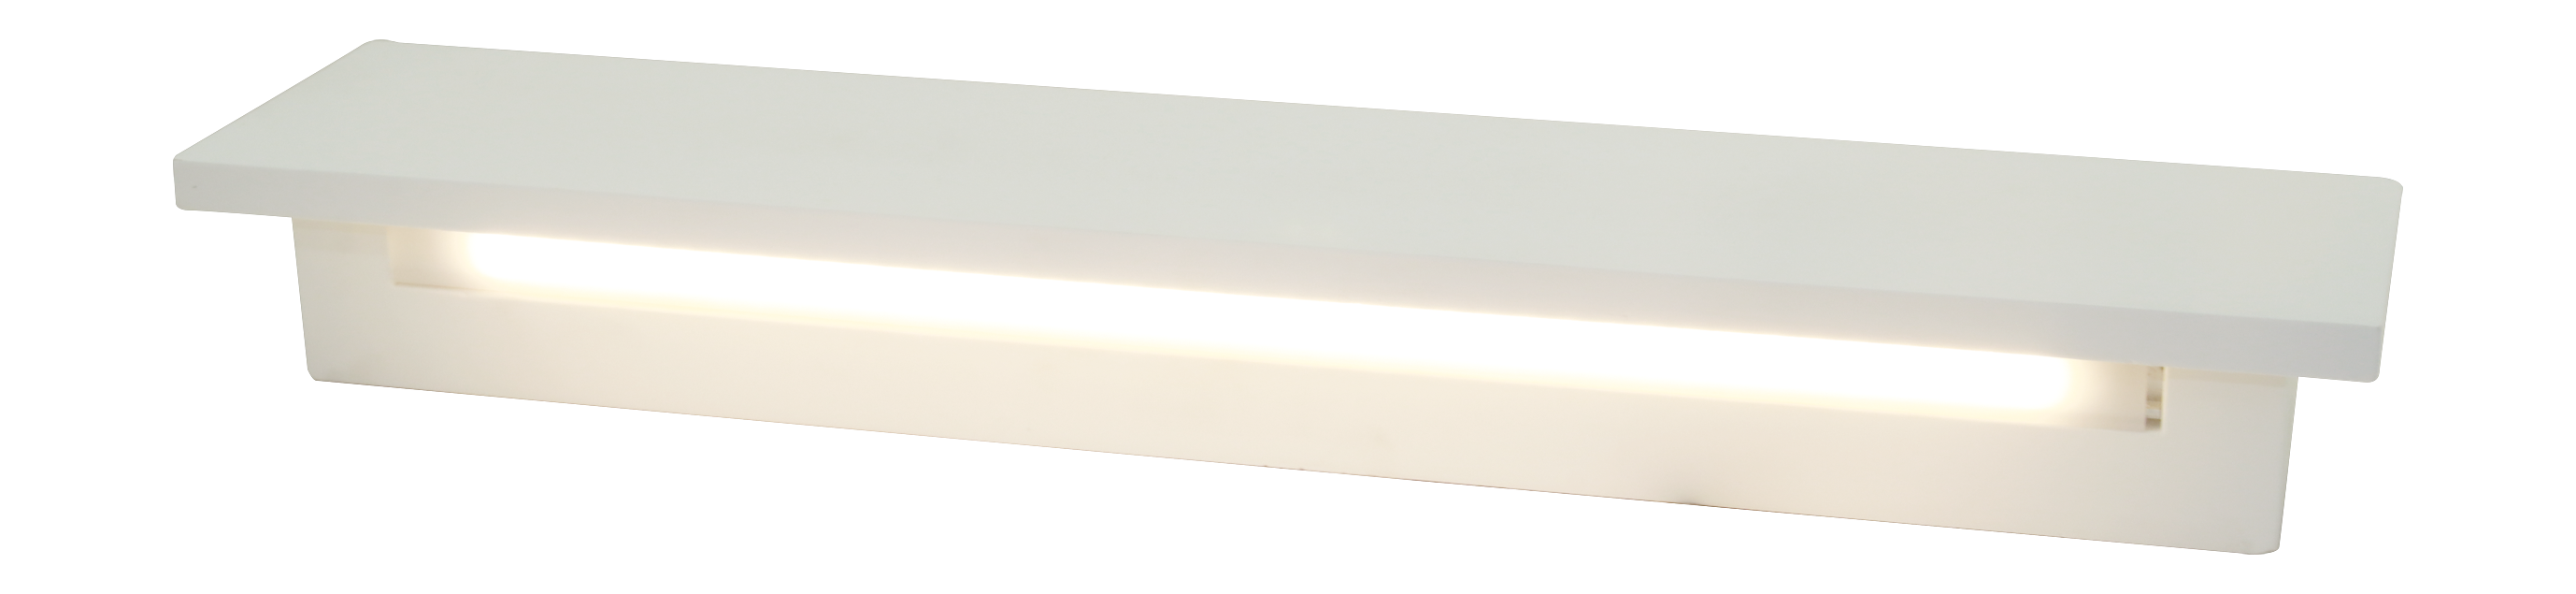 室内石膏LED线条灯 壁灯